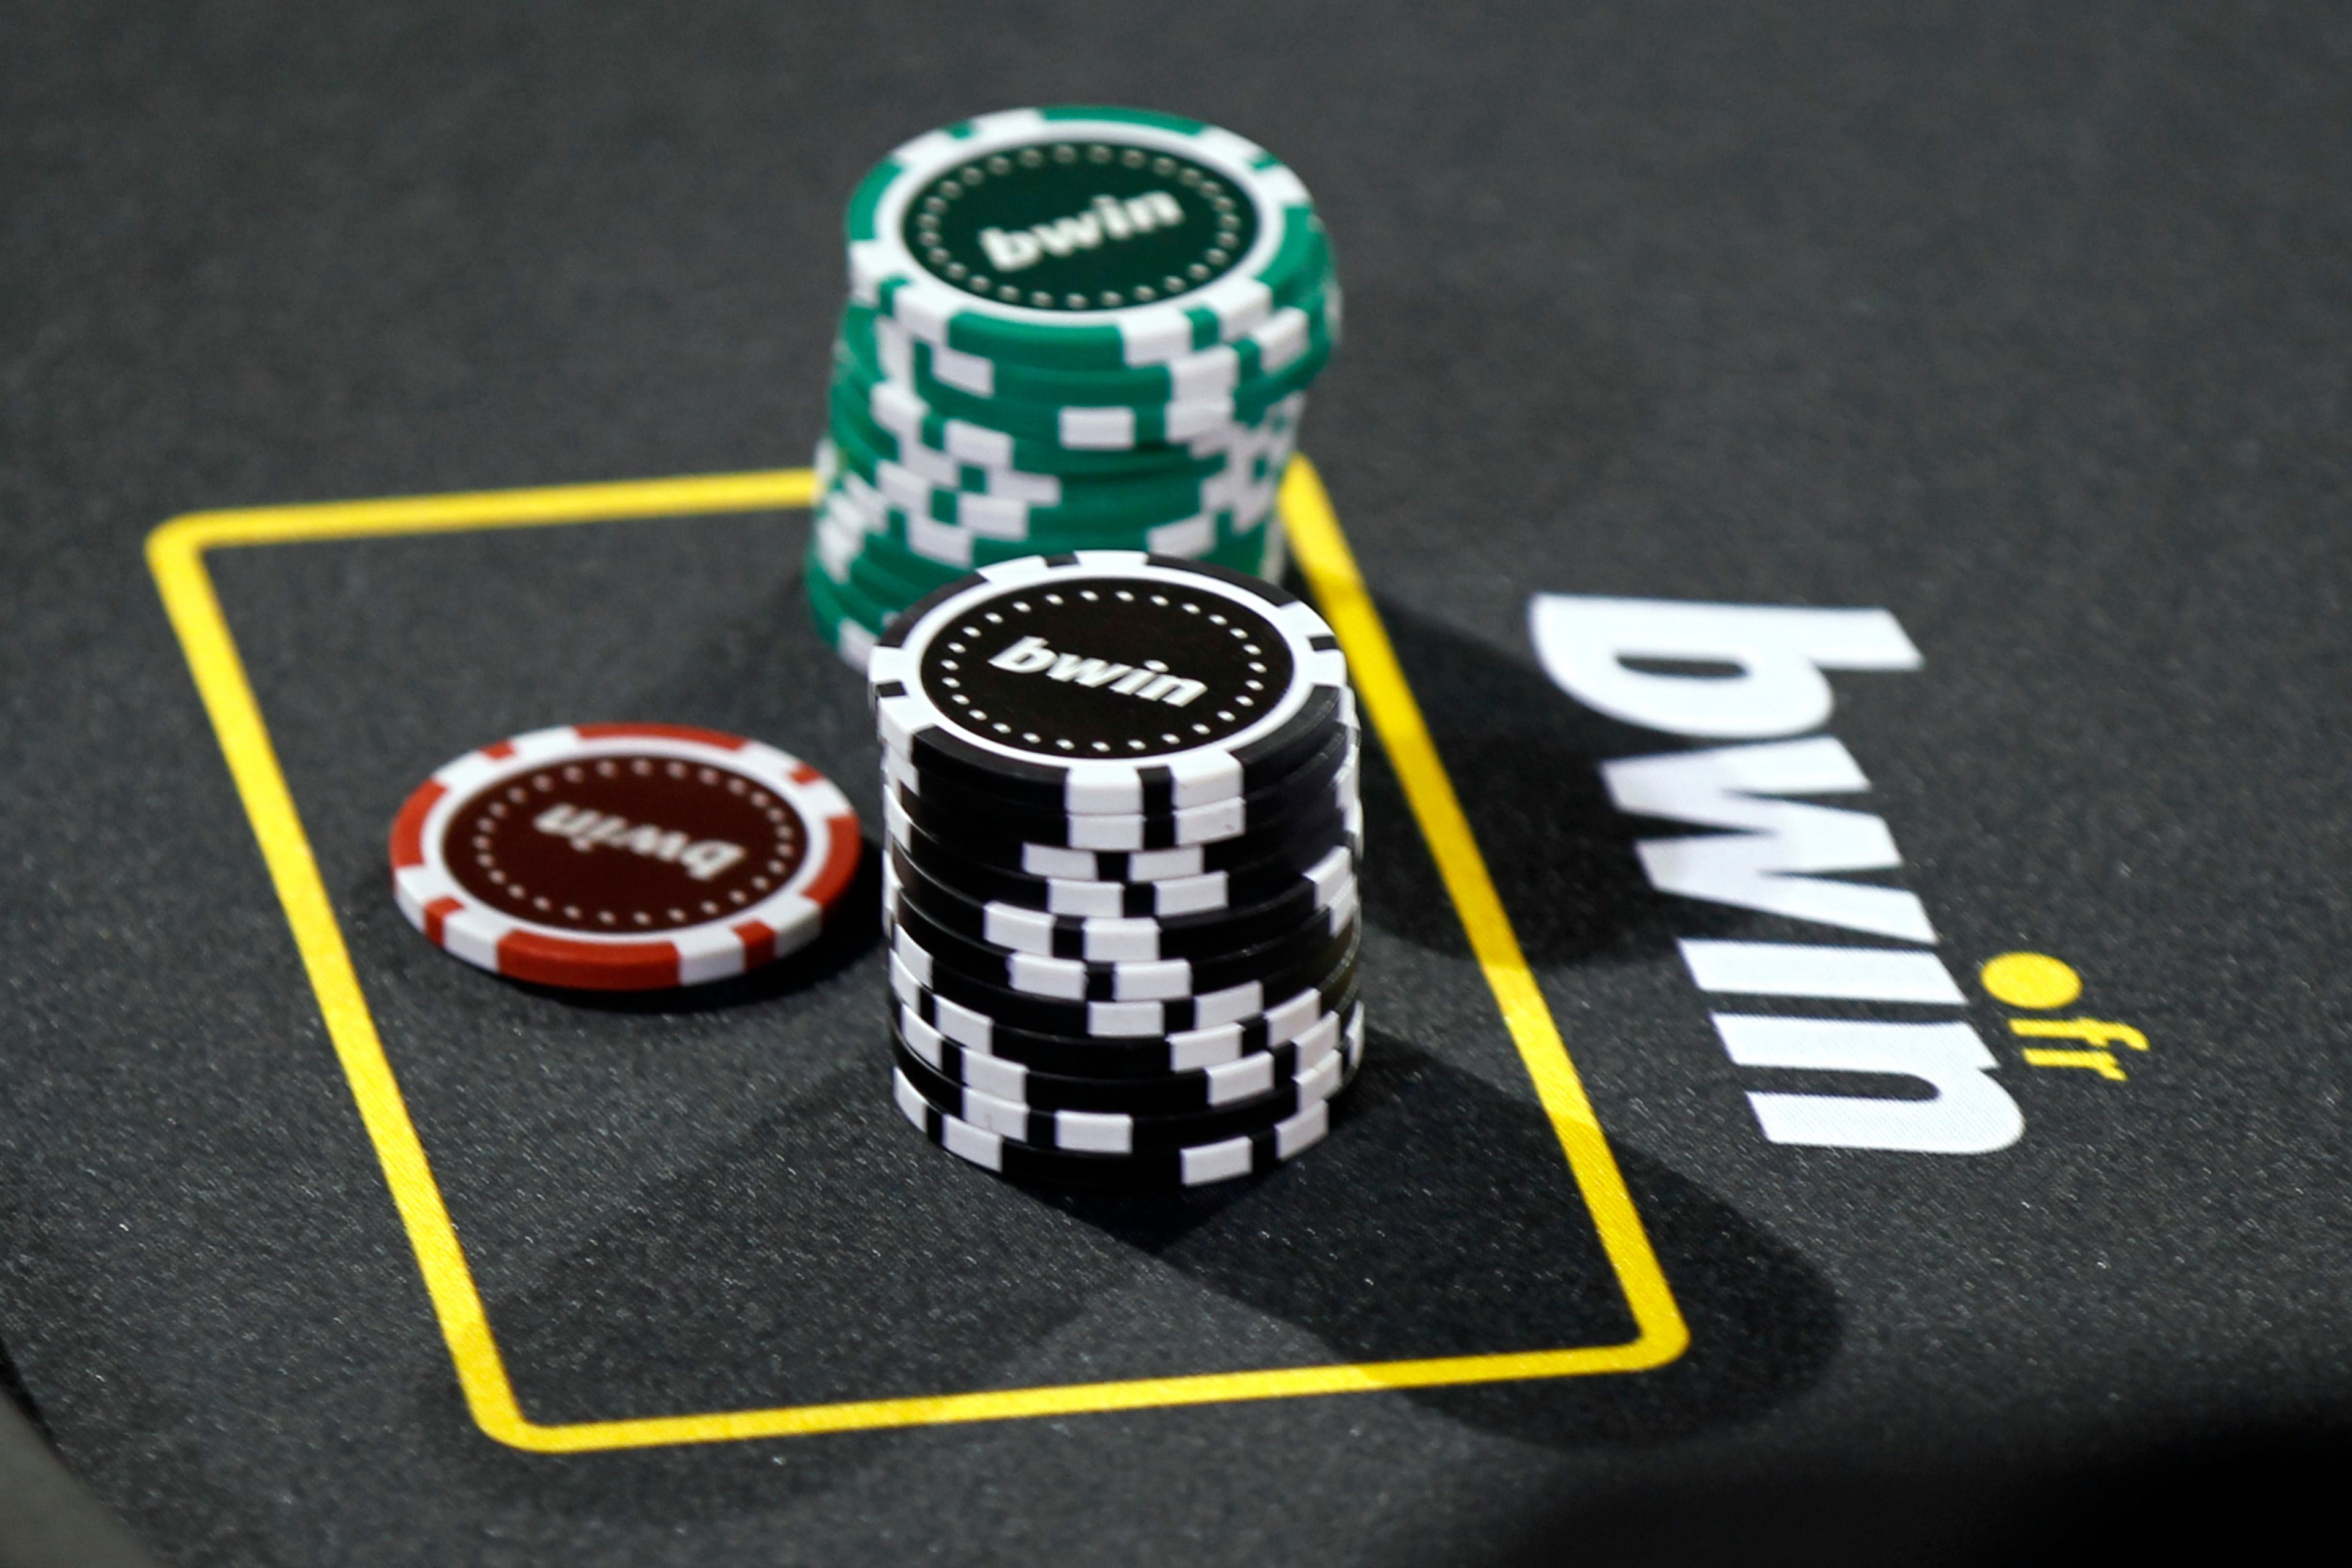 Unas fichas de poker en una mesa con publicidad de Bwin